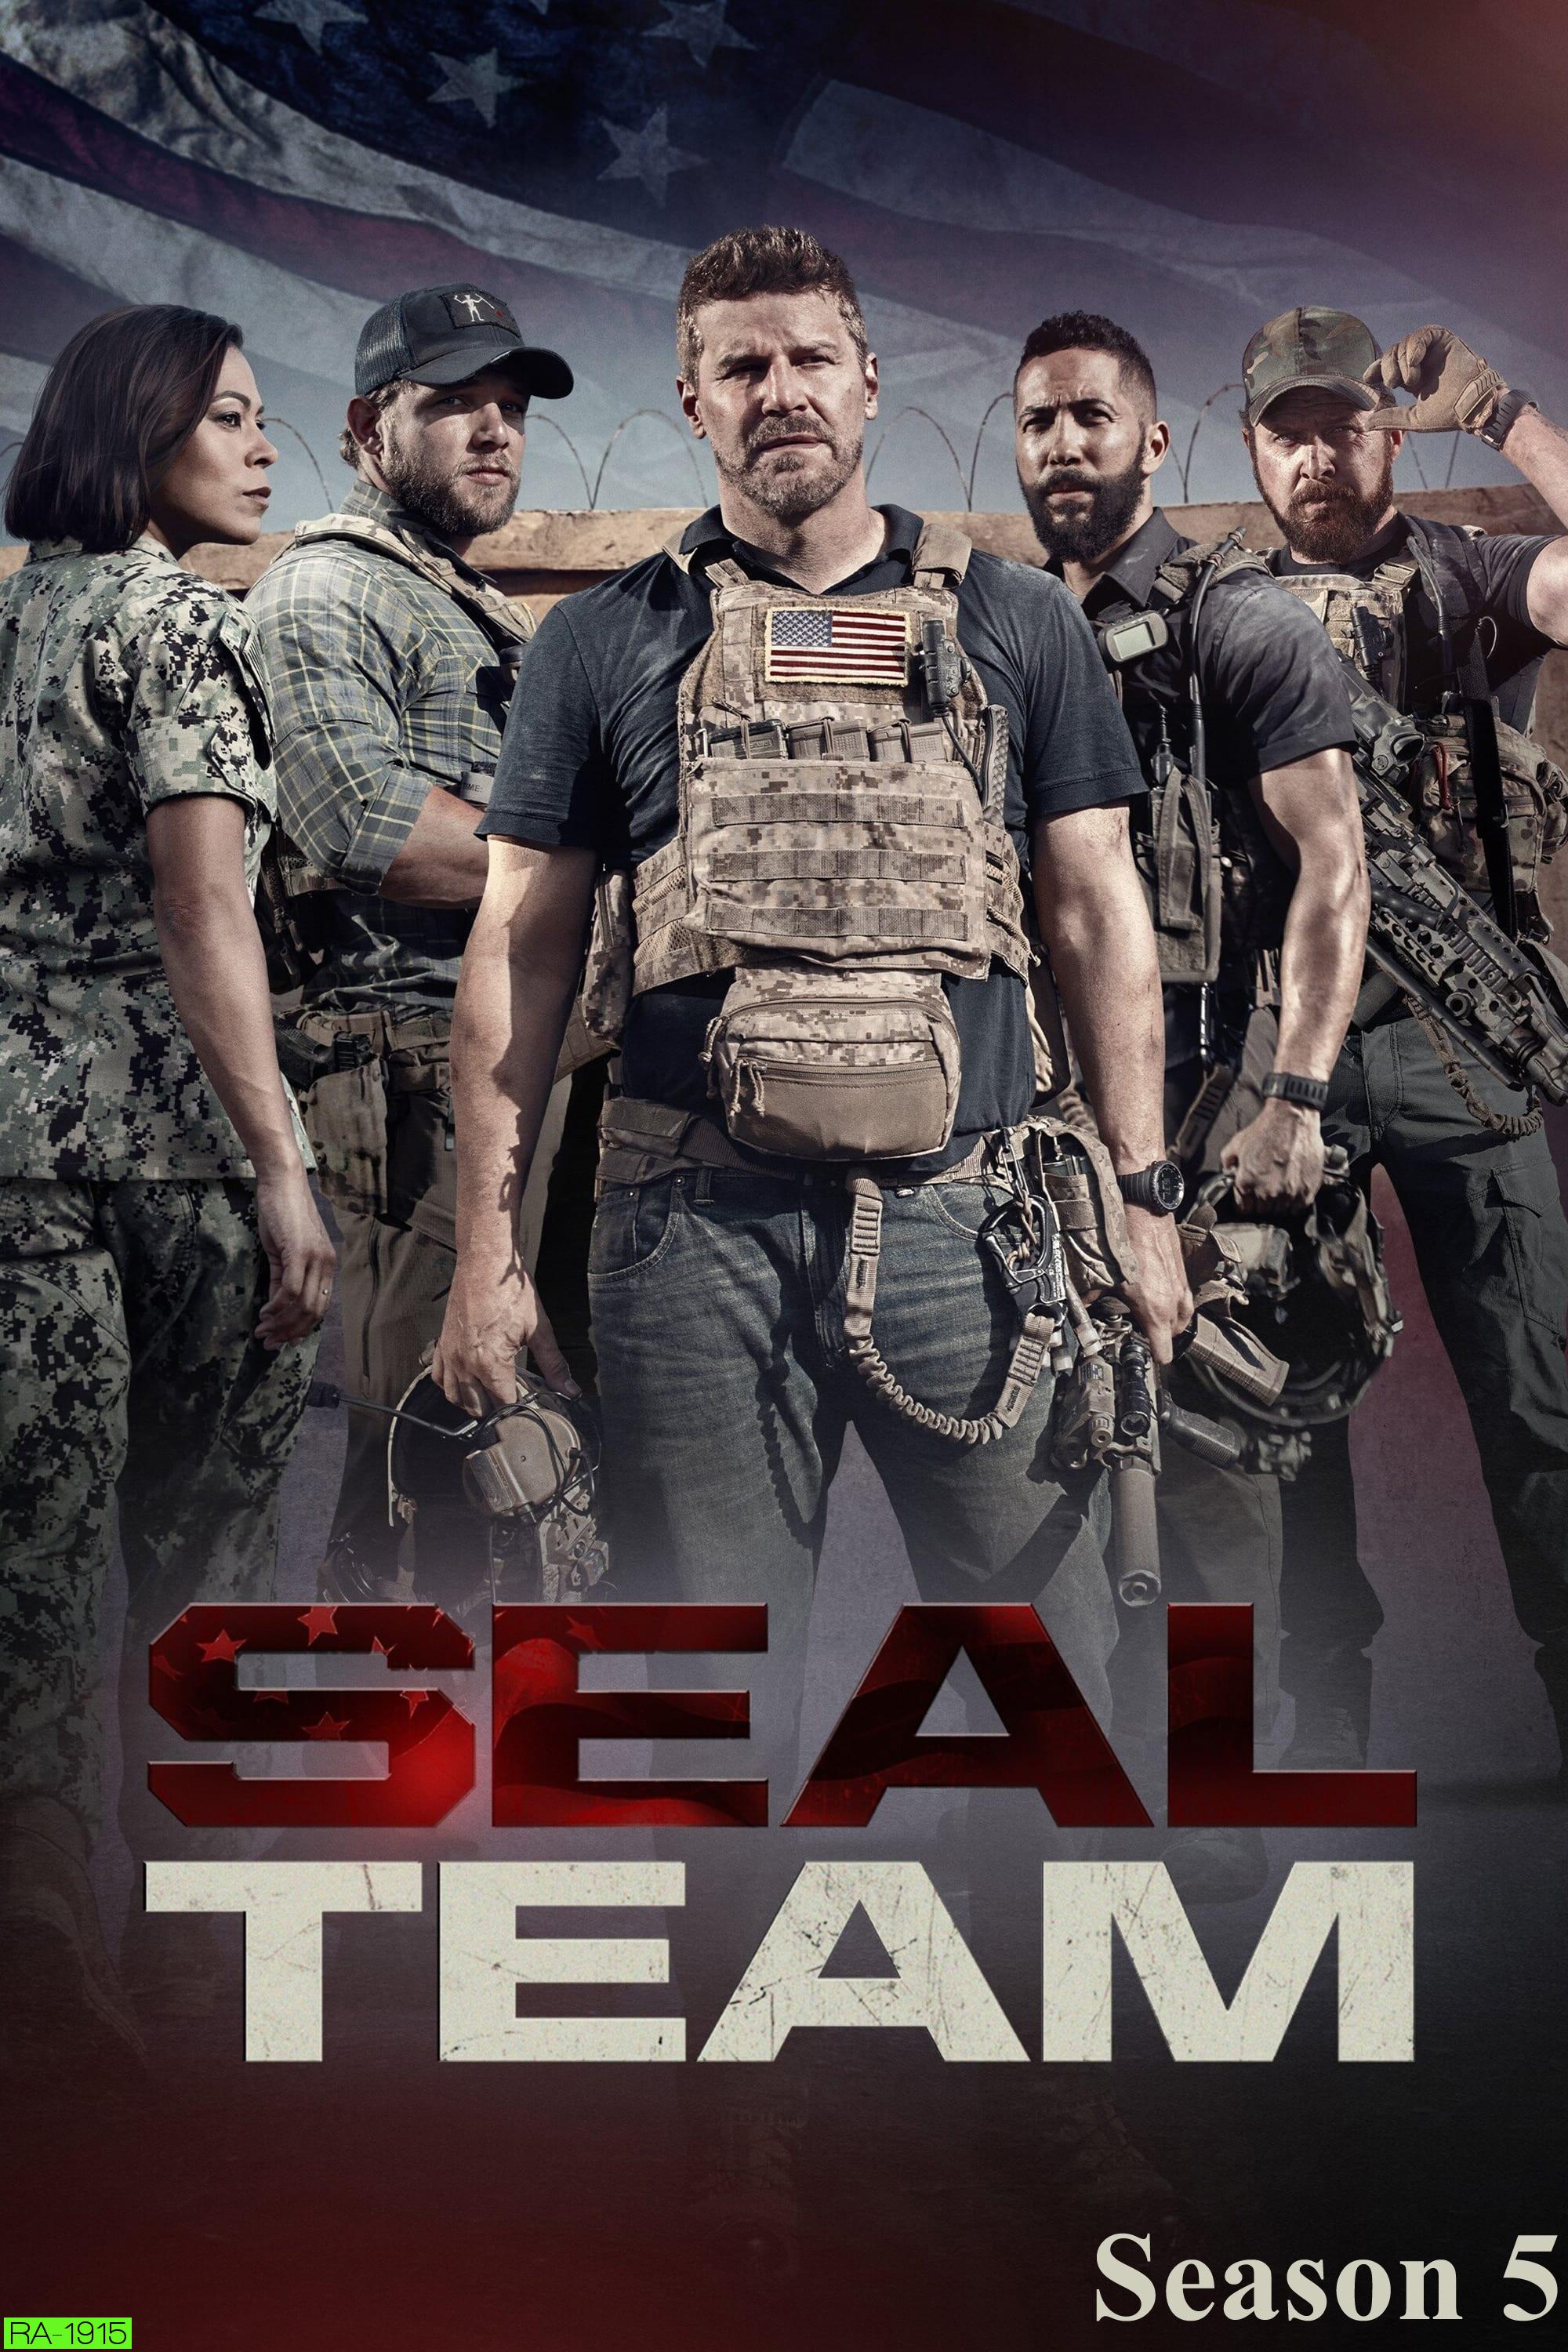 SEAL Team Season 5 สุดยอดหน่วยซีลภารกิจเดือด ปี 5 (14 ตอนจบ)